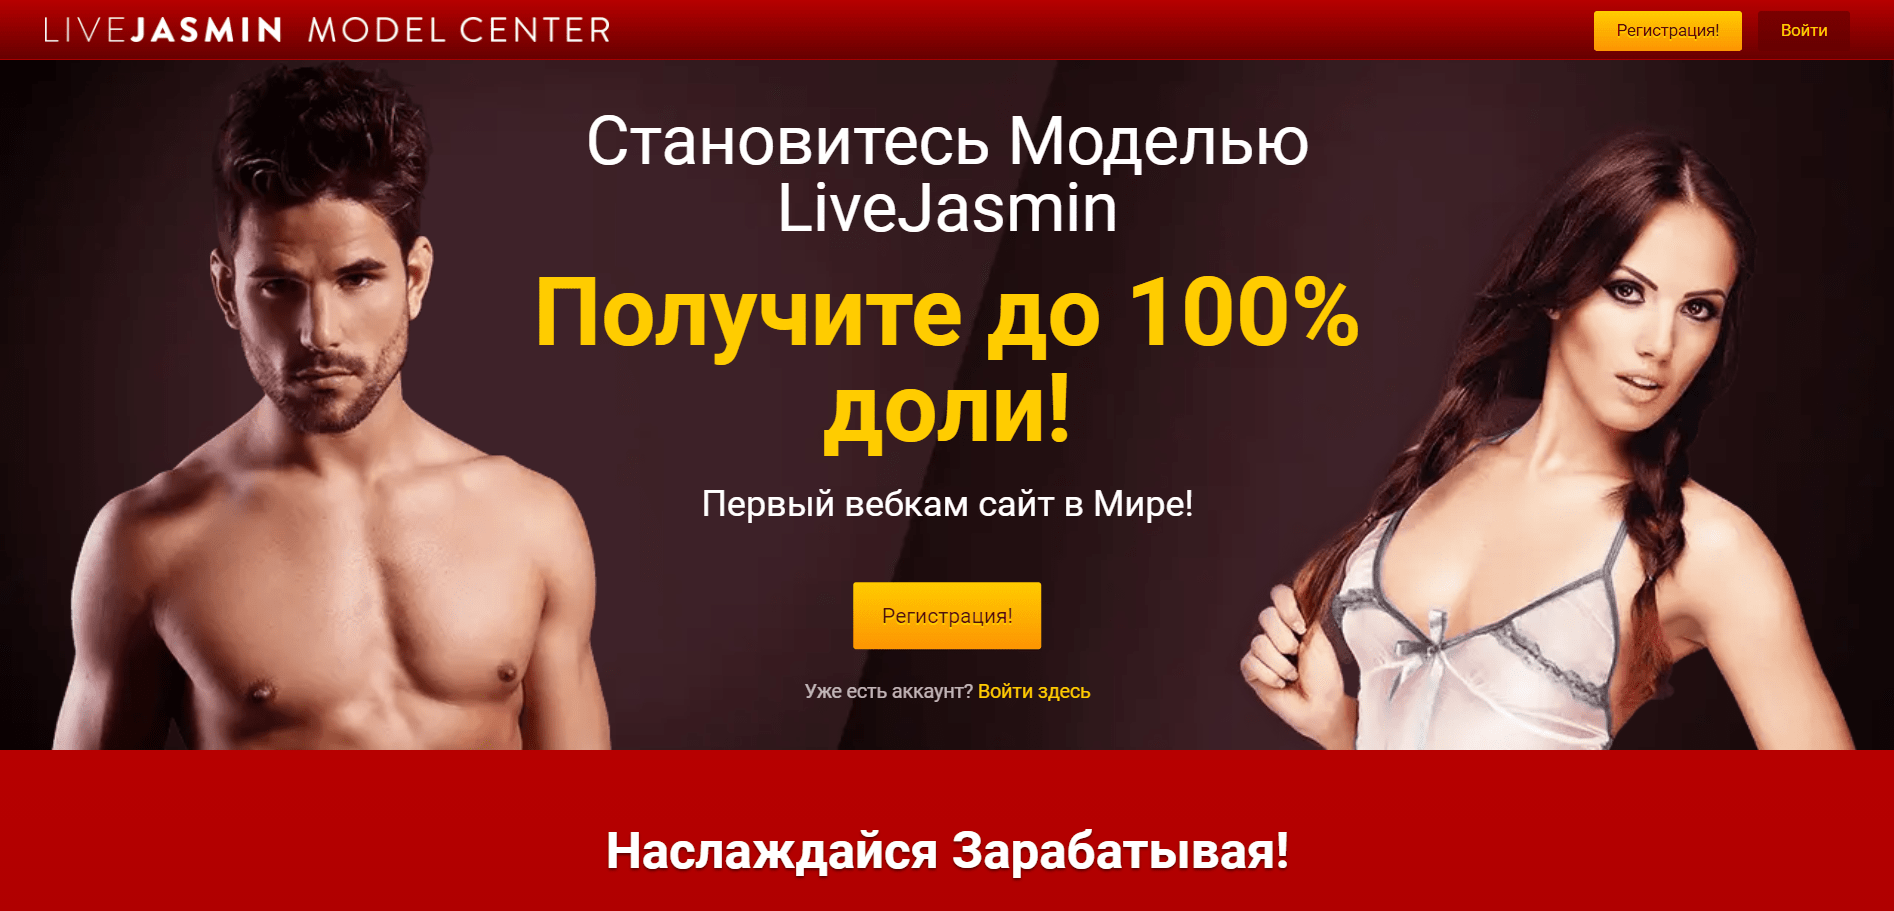 Вебкам сайт LiveJasmin